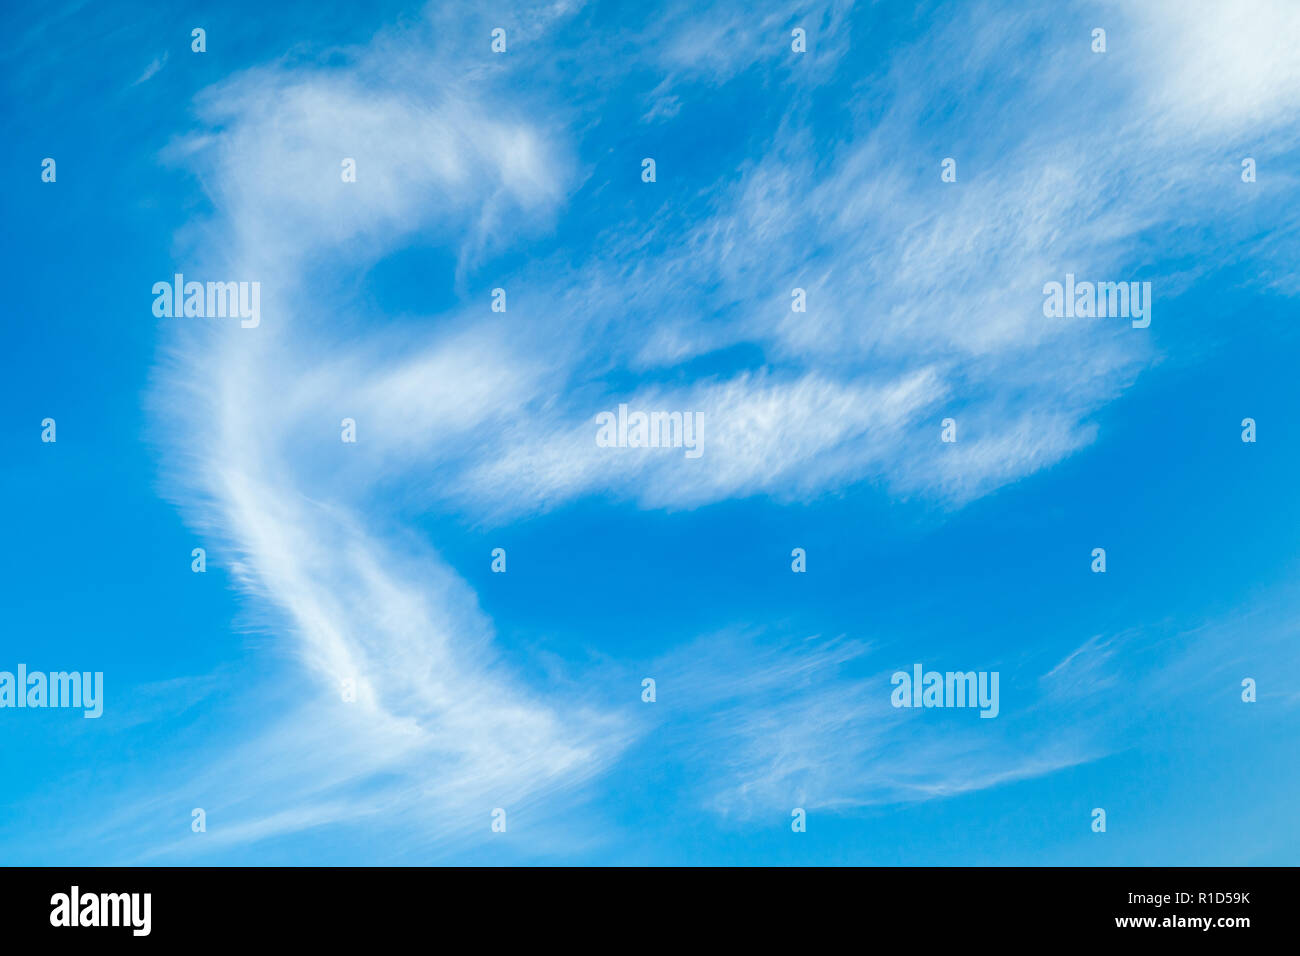 Natürliche blauer Himmel mit Zirruswolken bei Tag. Hintergrund Foto Textur Stockfoto